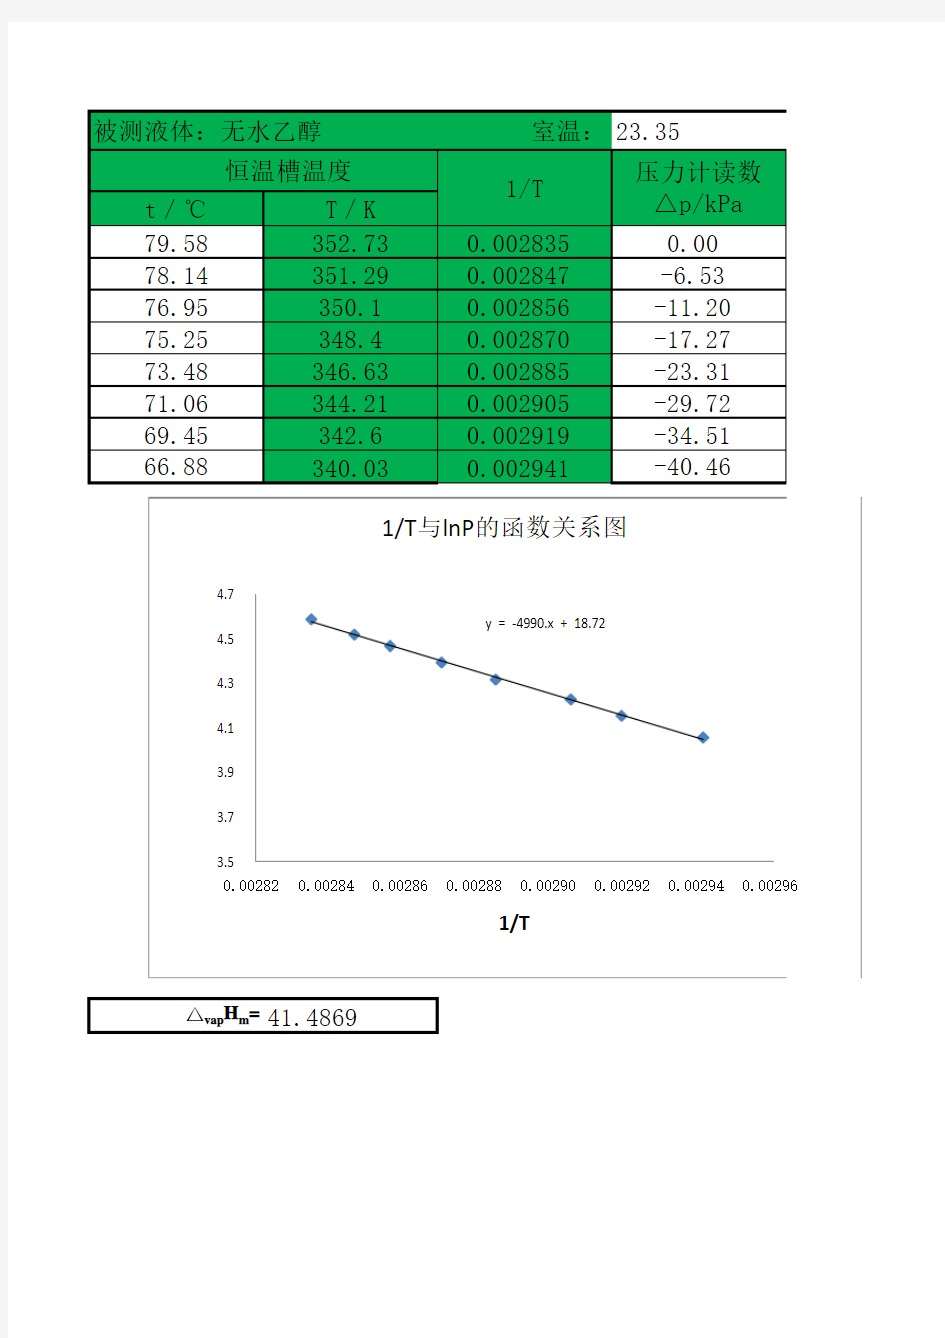 液体饱和蒸汽压的测定-数据处理(四川理工)